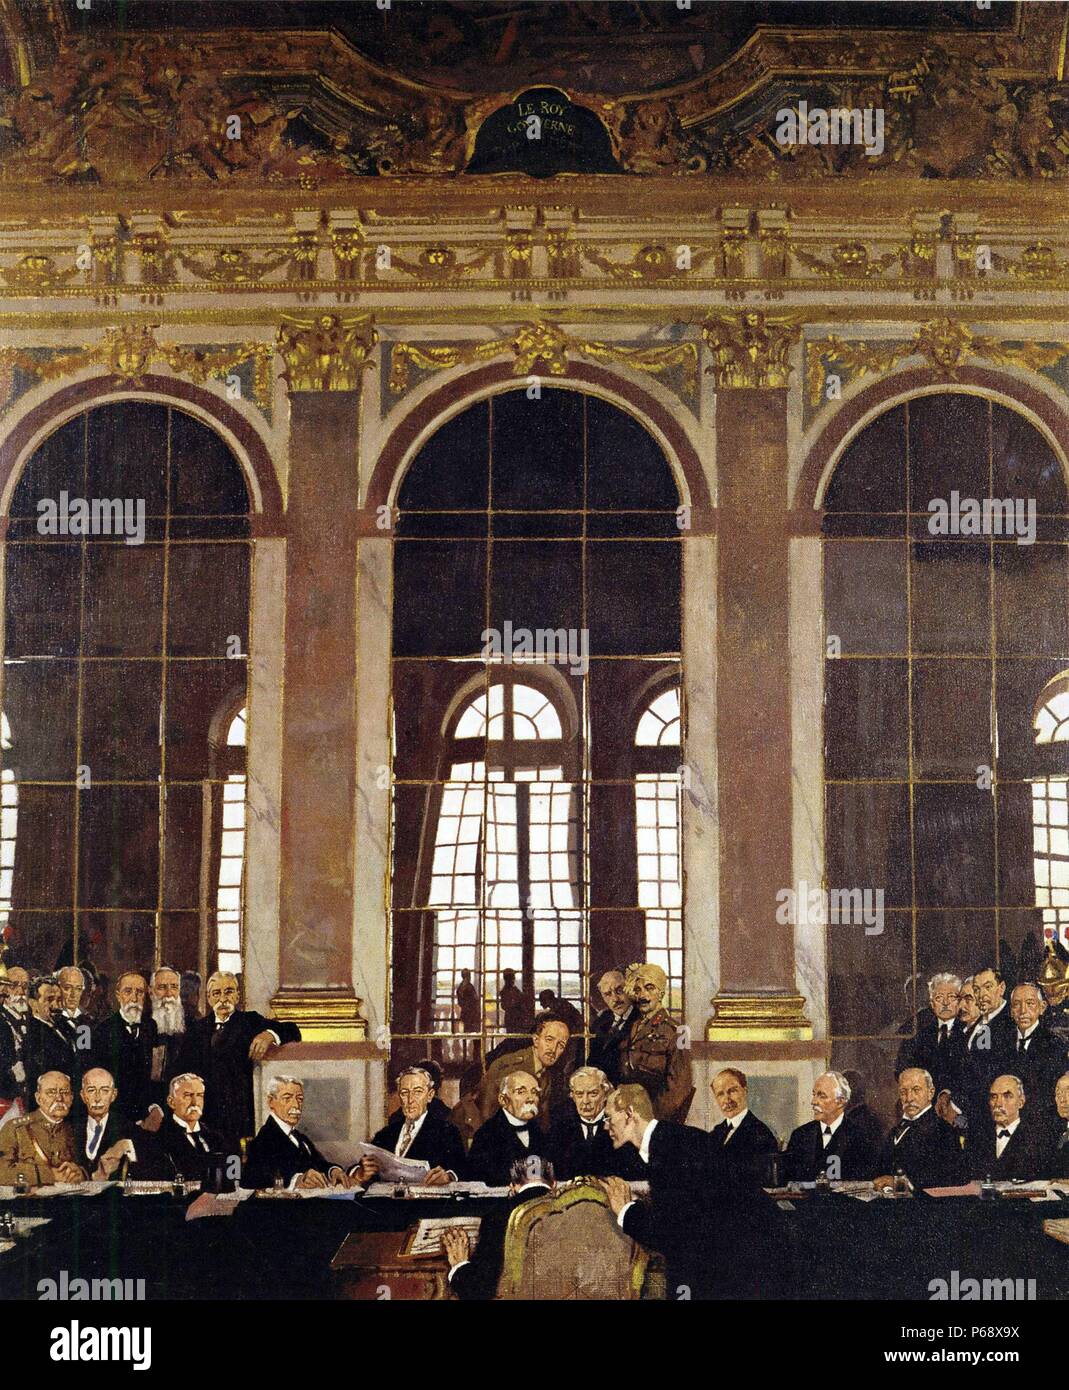 La firma della pace nella sala degli specchi di Versailles. Dipinto da William Orpen (1878-1931), un ritratto irlandese pittore che ha lavorato principalmente a Londra. Datata 1919. Foto Stock